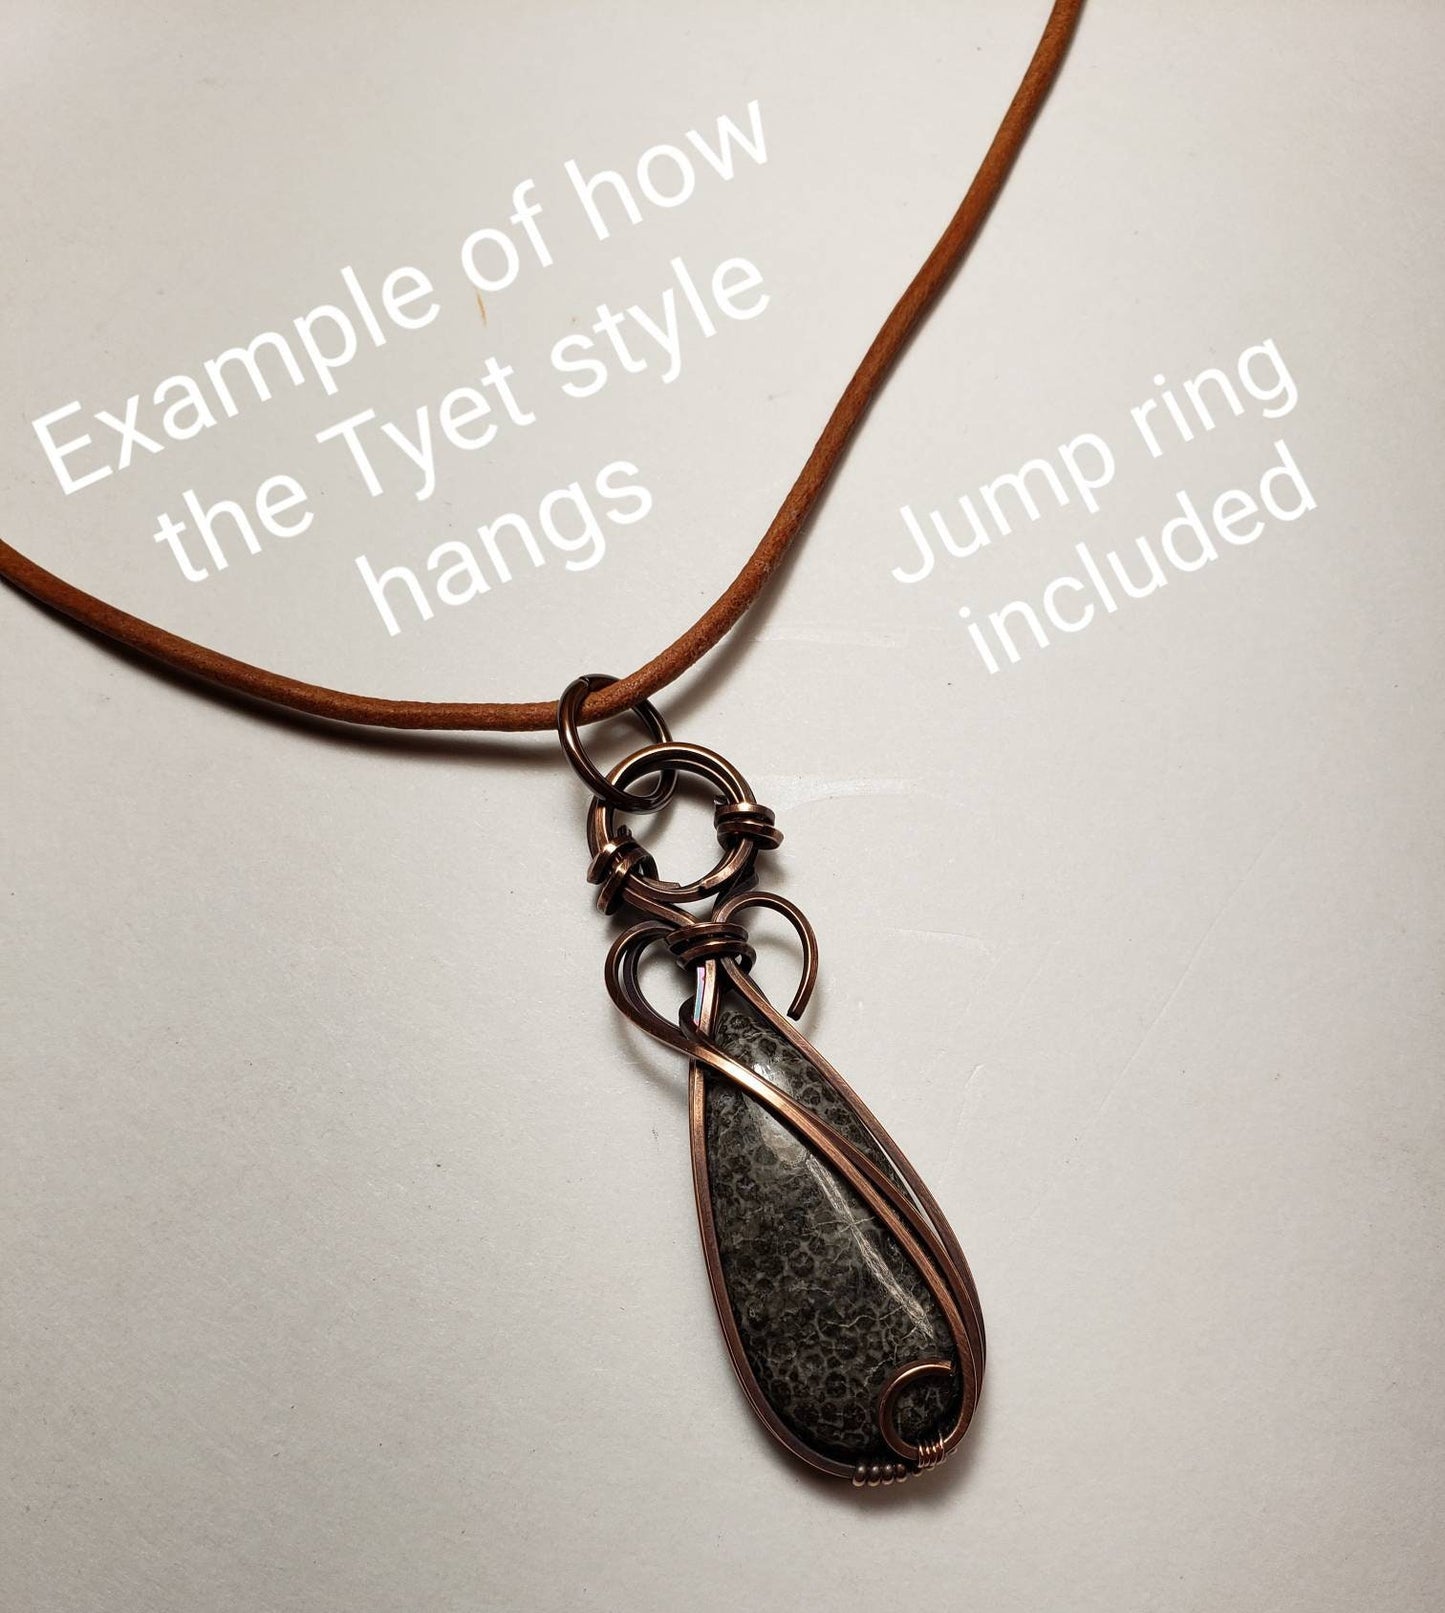 Picture Jasper - 'Tyet' - Wire Wrap Pendant - Oxidized Copper